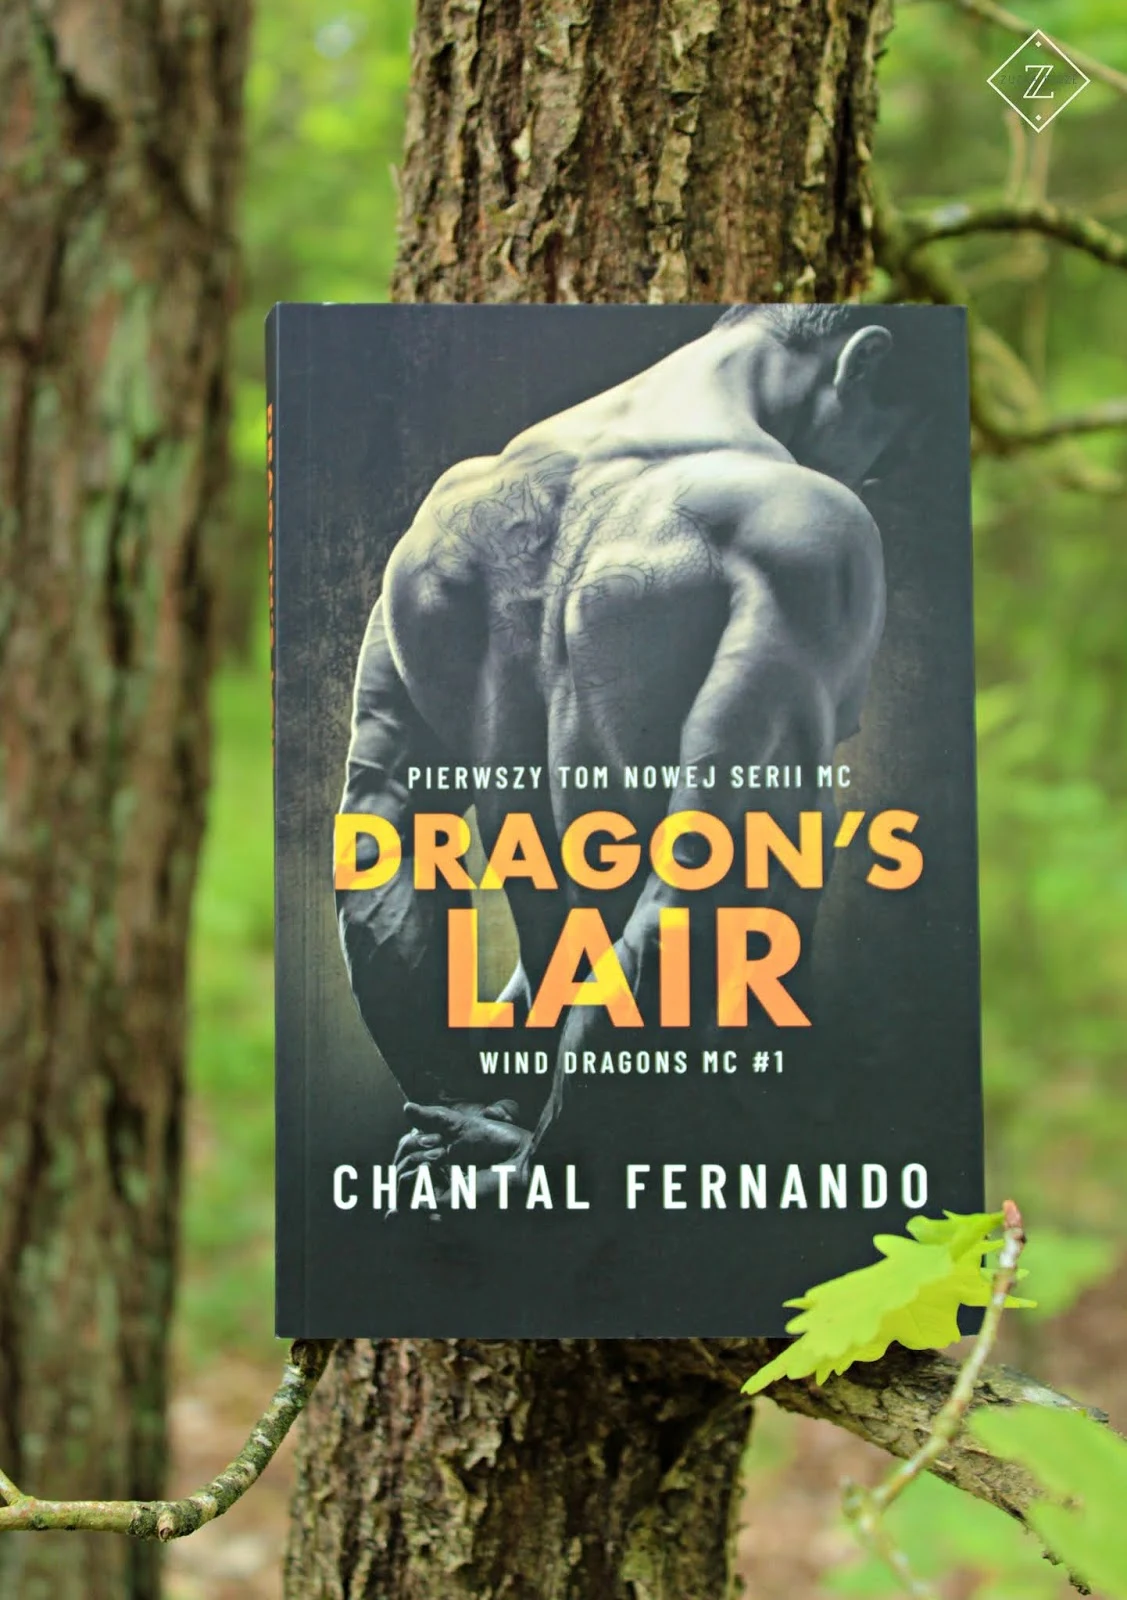 Chantal Fernando "Dragon's Lair" - premierowa recenzja patronacka